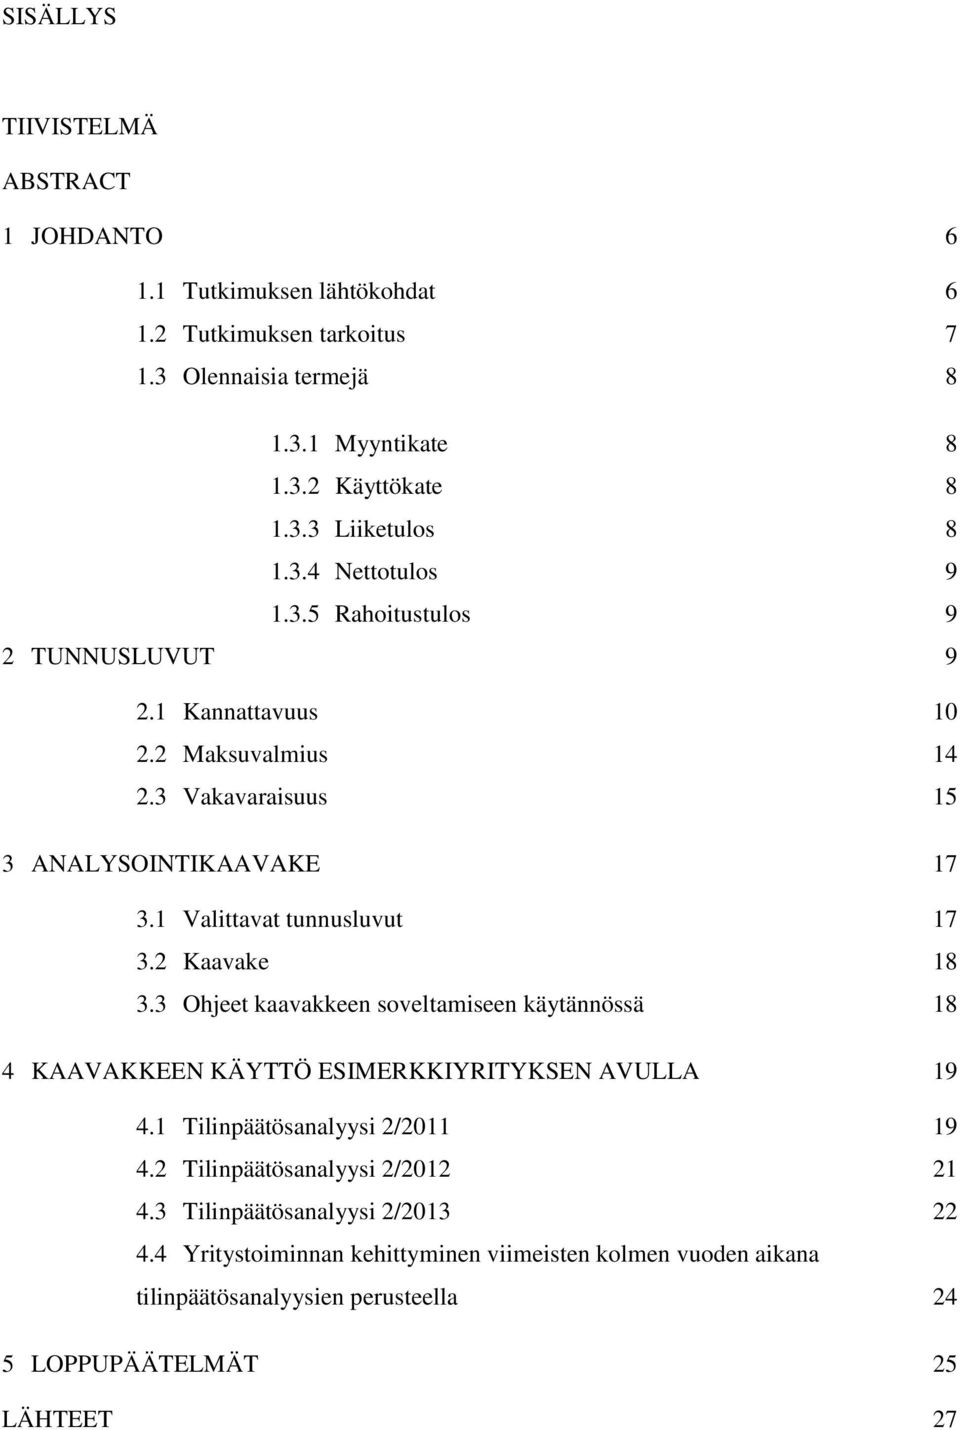 2 Kaavake 18 3.3 Ohjeet kaavakkeen soveltamiseen käytännössä 18 4 KAAVAKKEEN KÄYTTÖ ESIMERKKIYRITYKSEN AVULLA 19 4.1 Tilinpäätösanalyysi 2/2011 19 4.